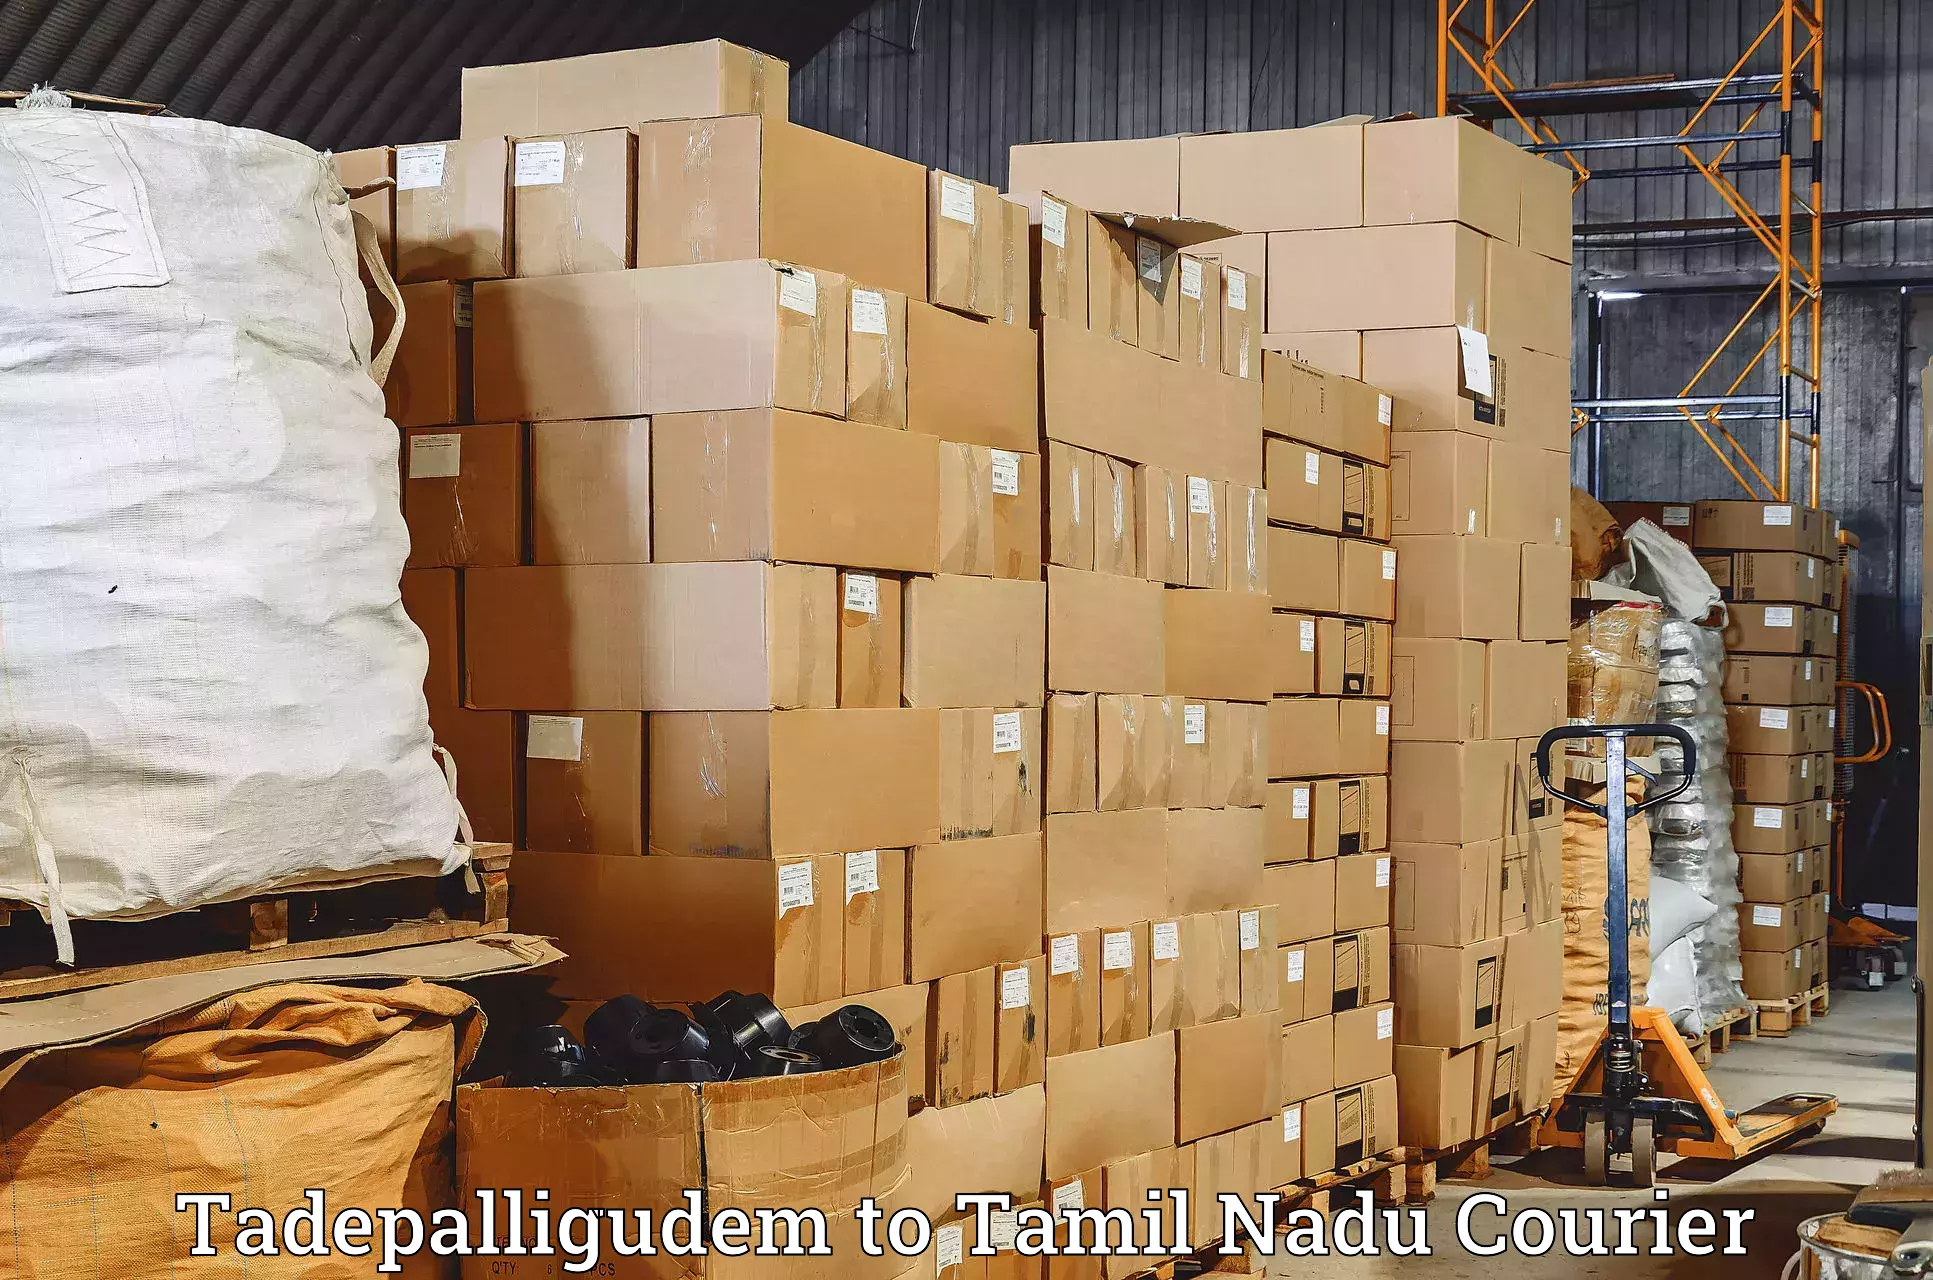 Courier service comparison Tadepalligudem to Orathanadu